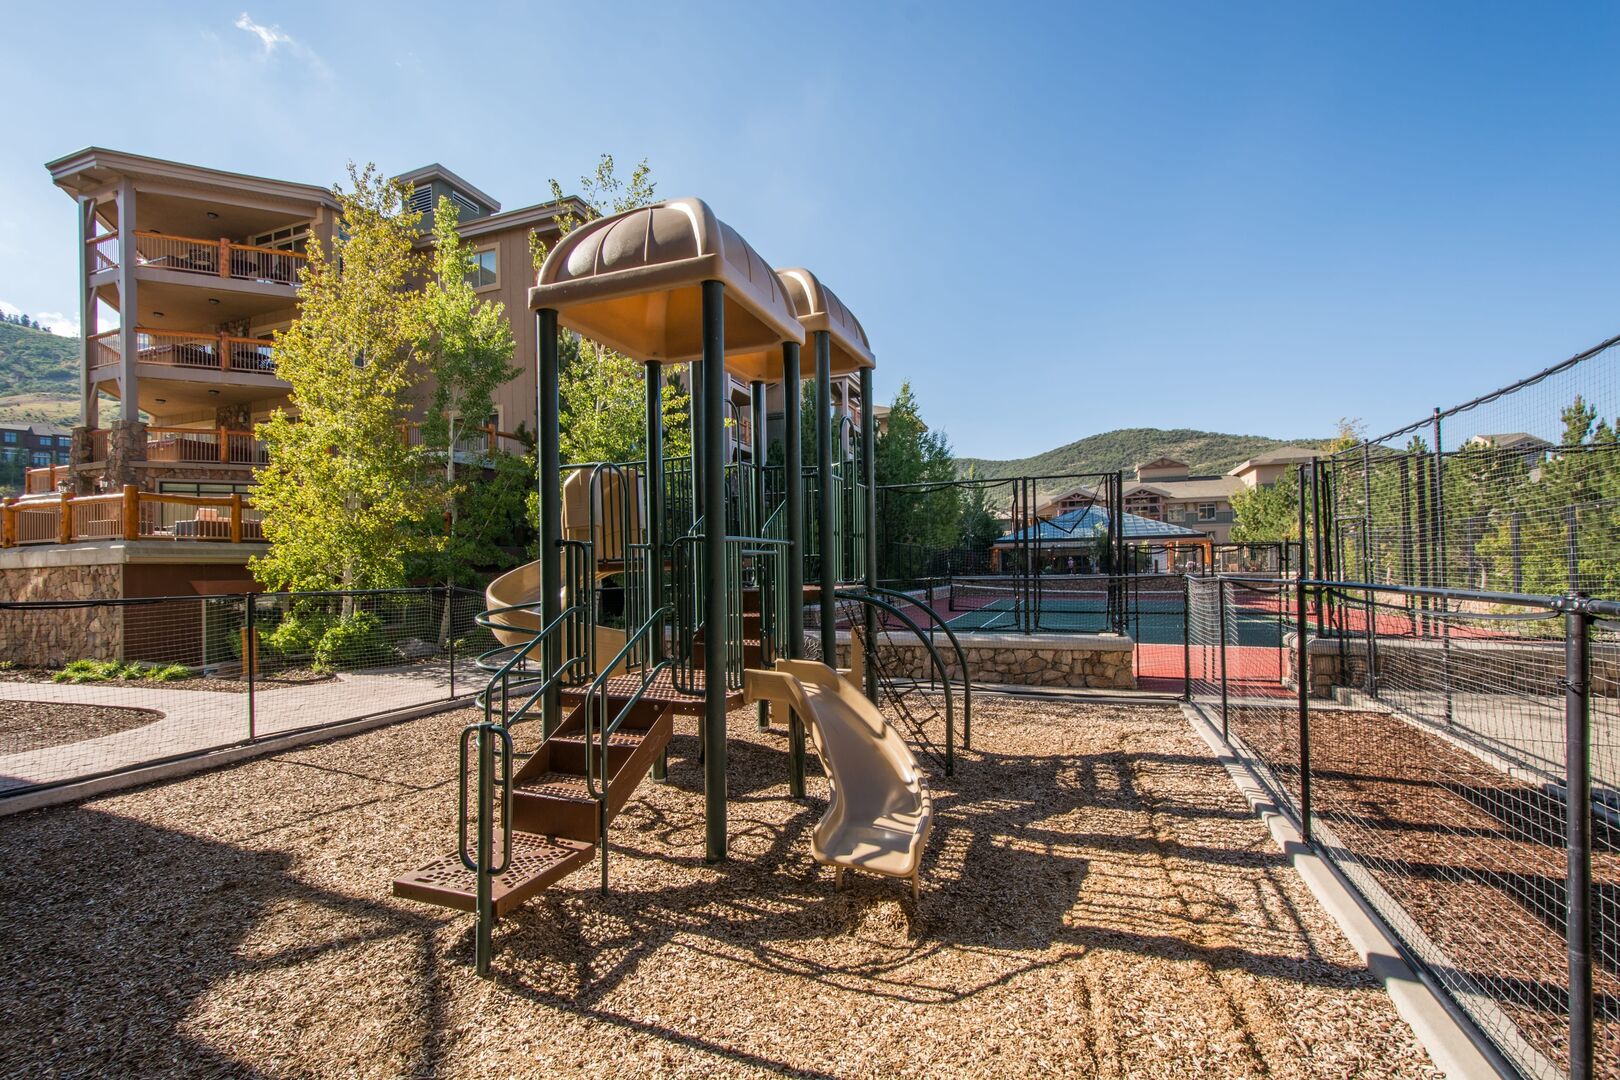 Children's Outdoor Play Area